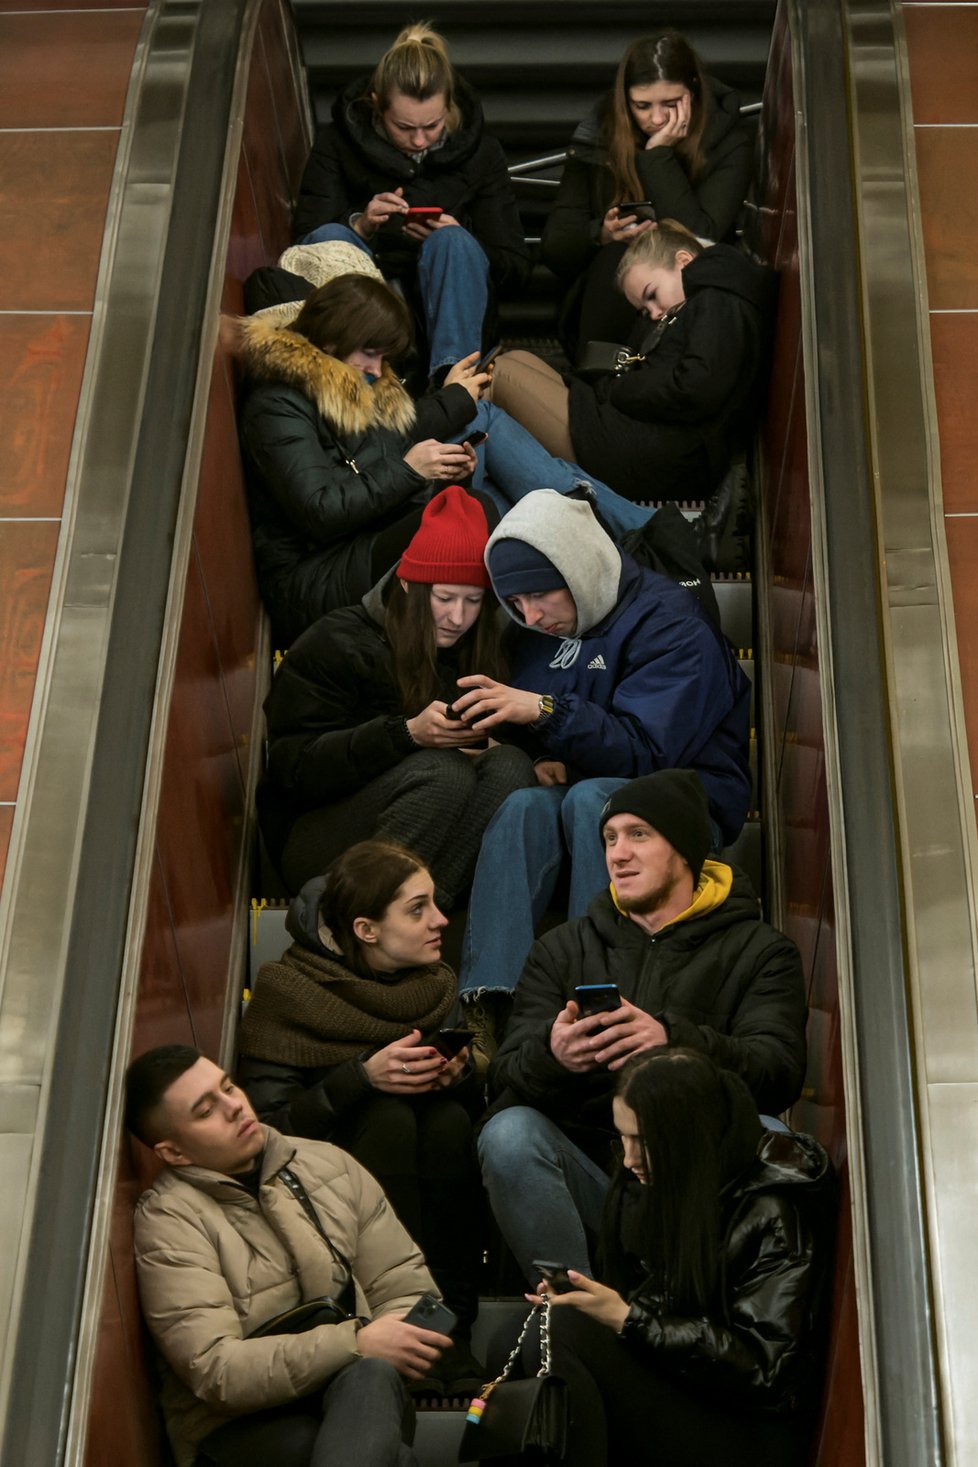 Kyjevané se schovávají před ruskými útoky v metru